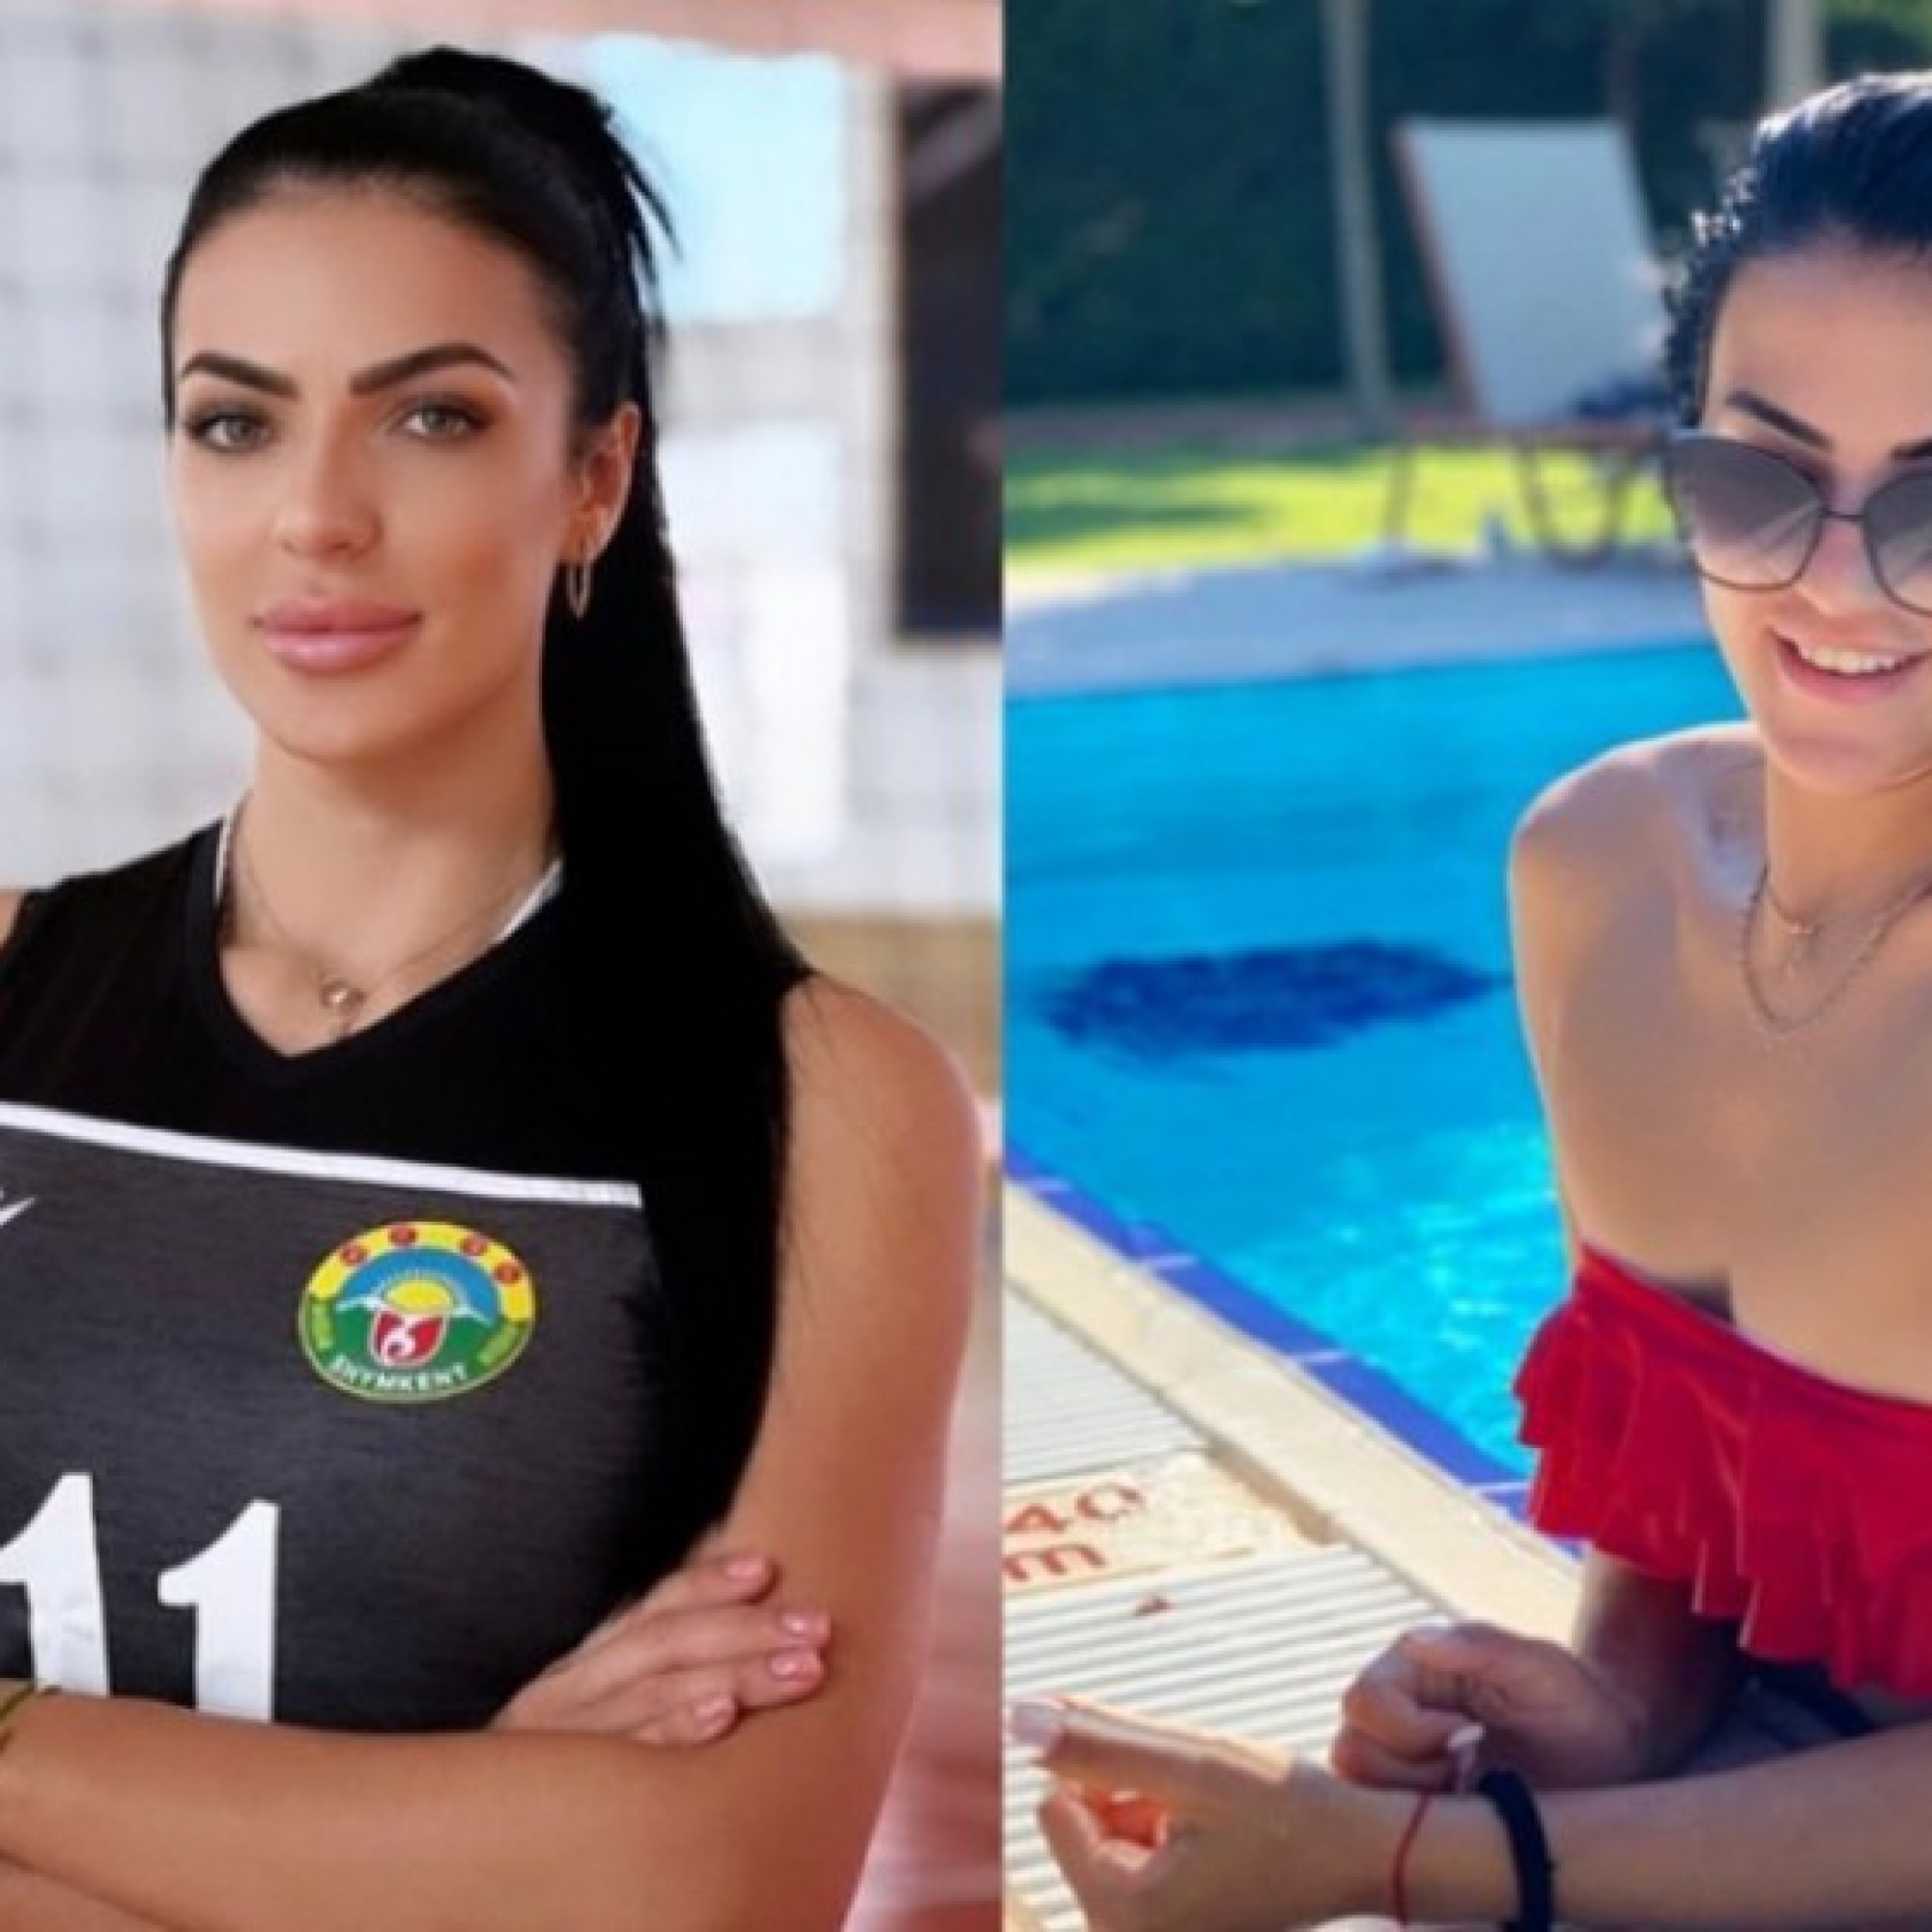  - Mỹ nhân bóng chuyền Kazakhstan vẫn xinh đẹp cuốn hút ở tuổi 32